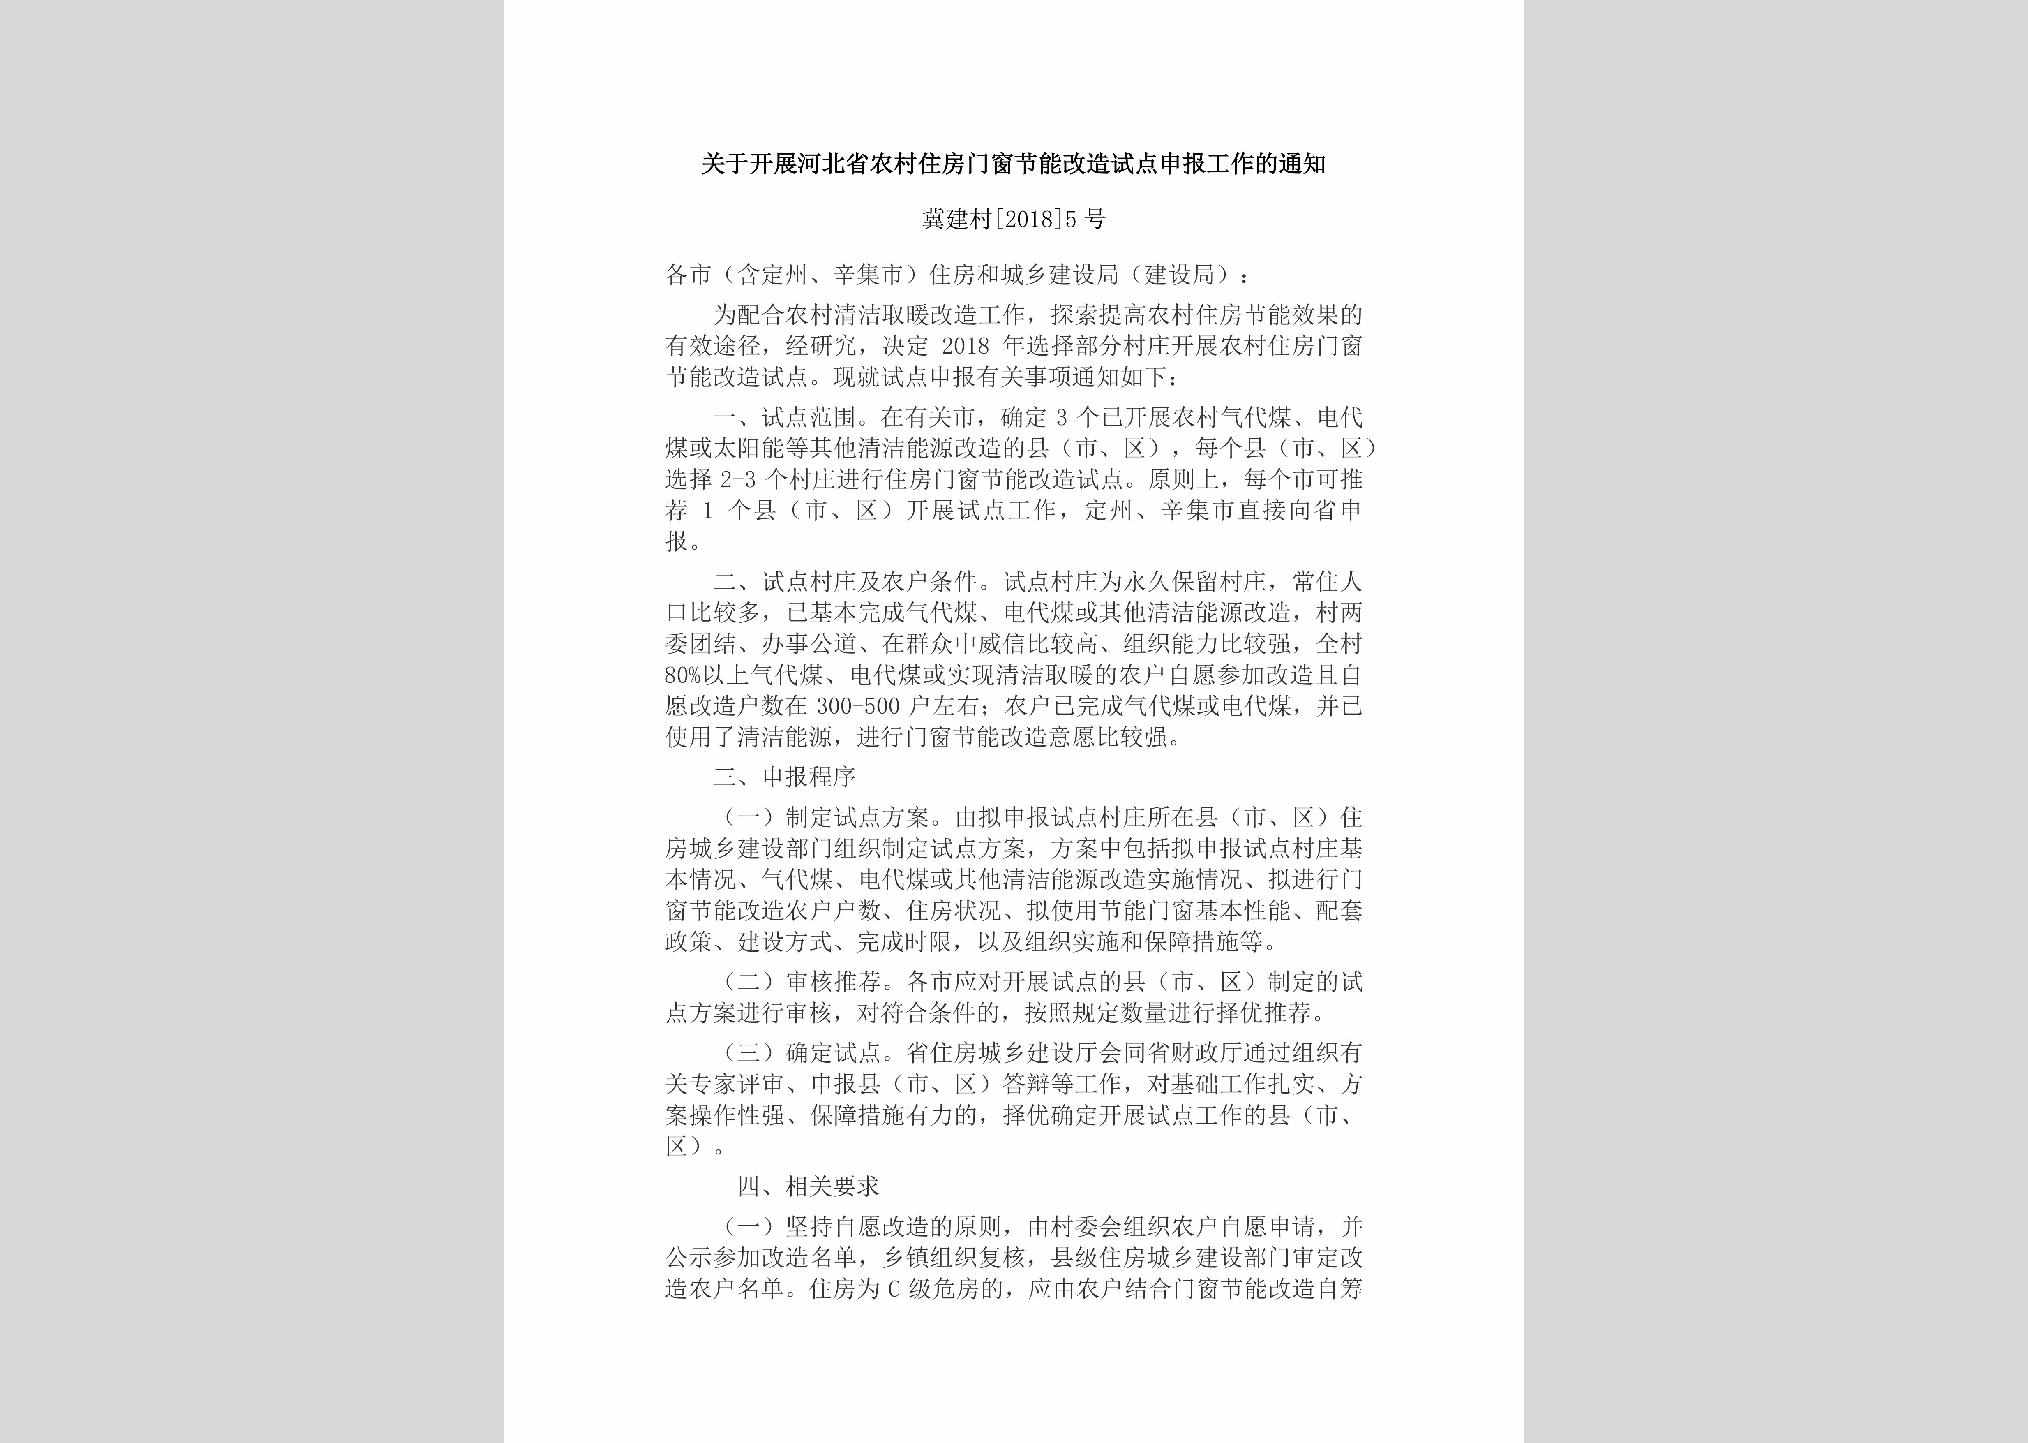 冀建村[2018]5号：关于开展河北省农村住房门窗节能改造试点申报工作的通知